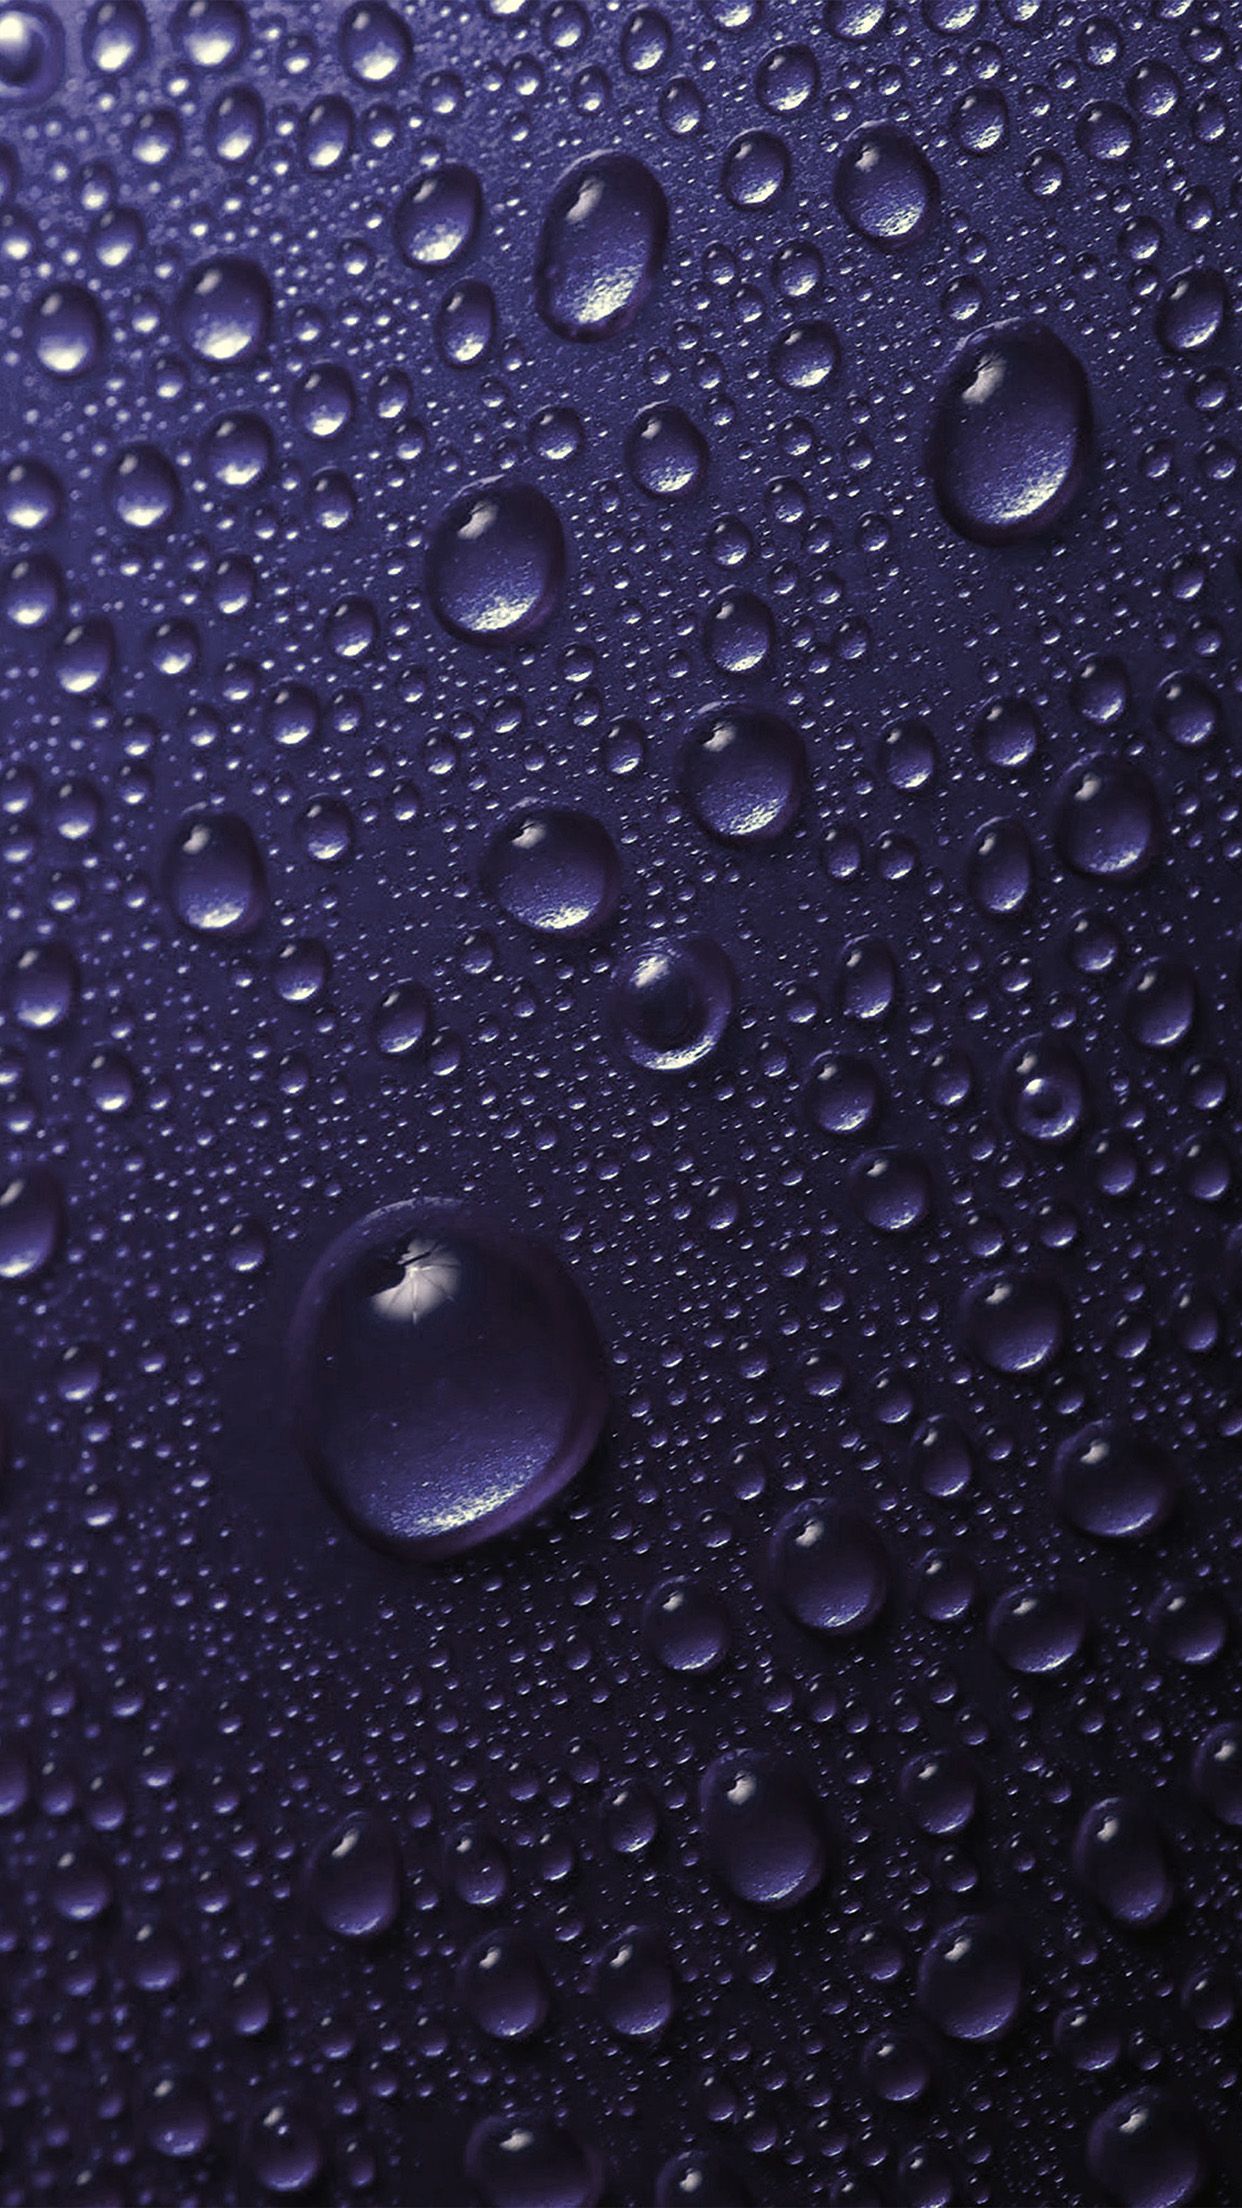 iPhone X wallpaper. rain drop purple water sad pattern dark